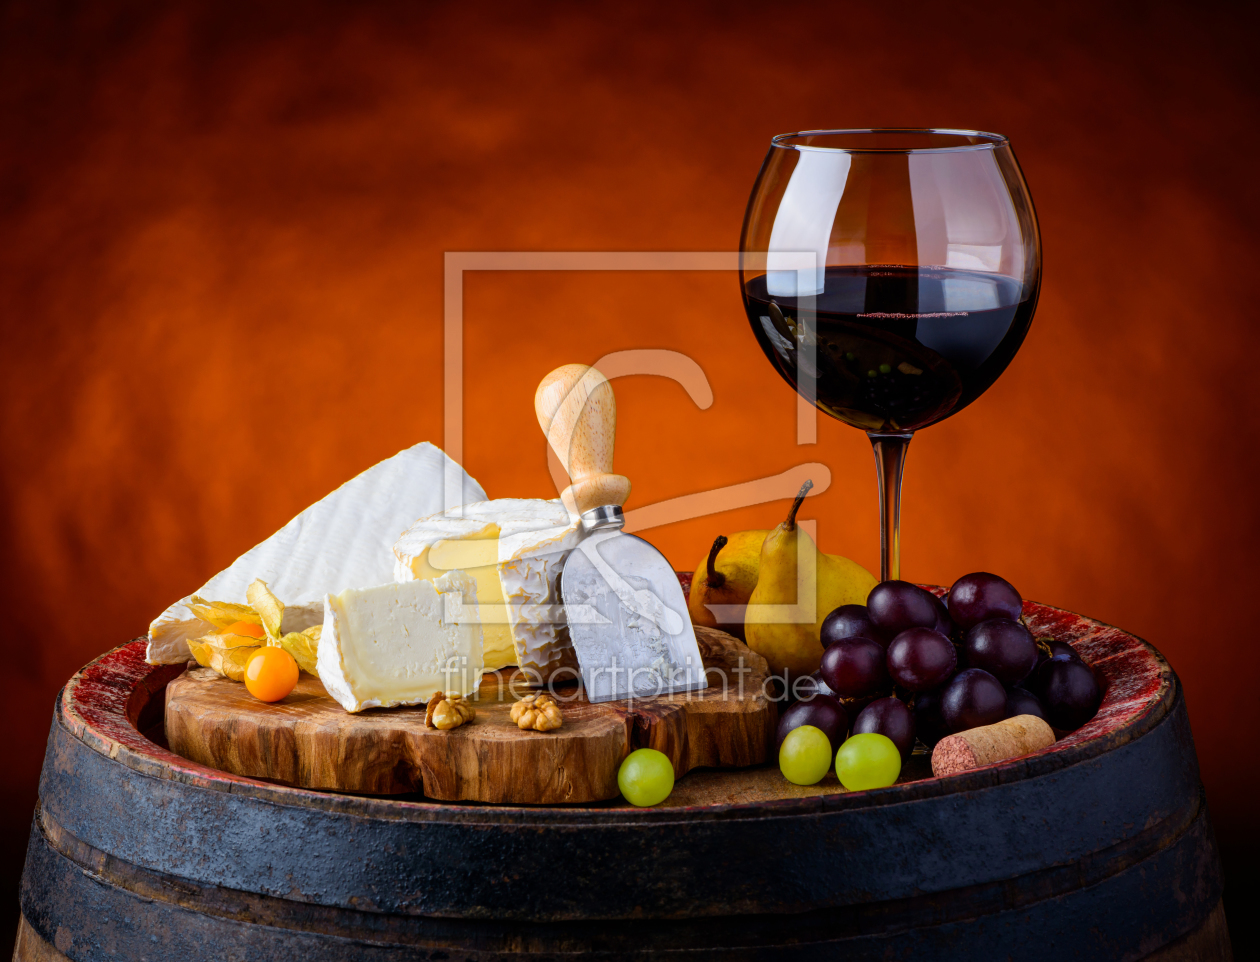 Bild-Nr.: 11908839 Wein und Käse Stillleben erstellt von xfotostudio